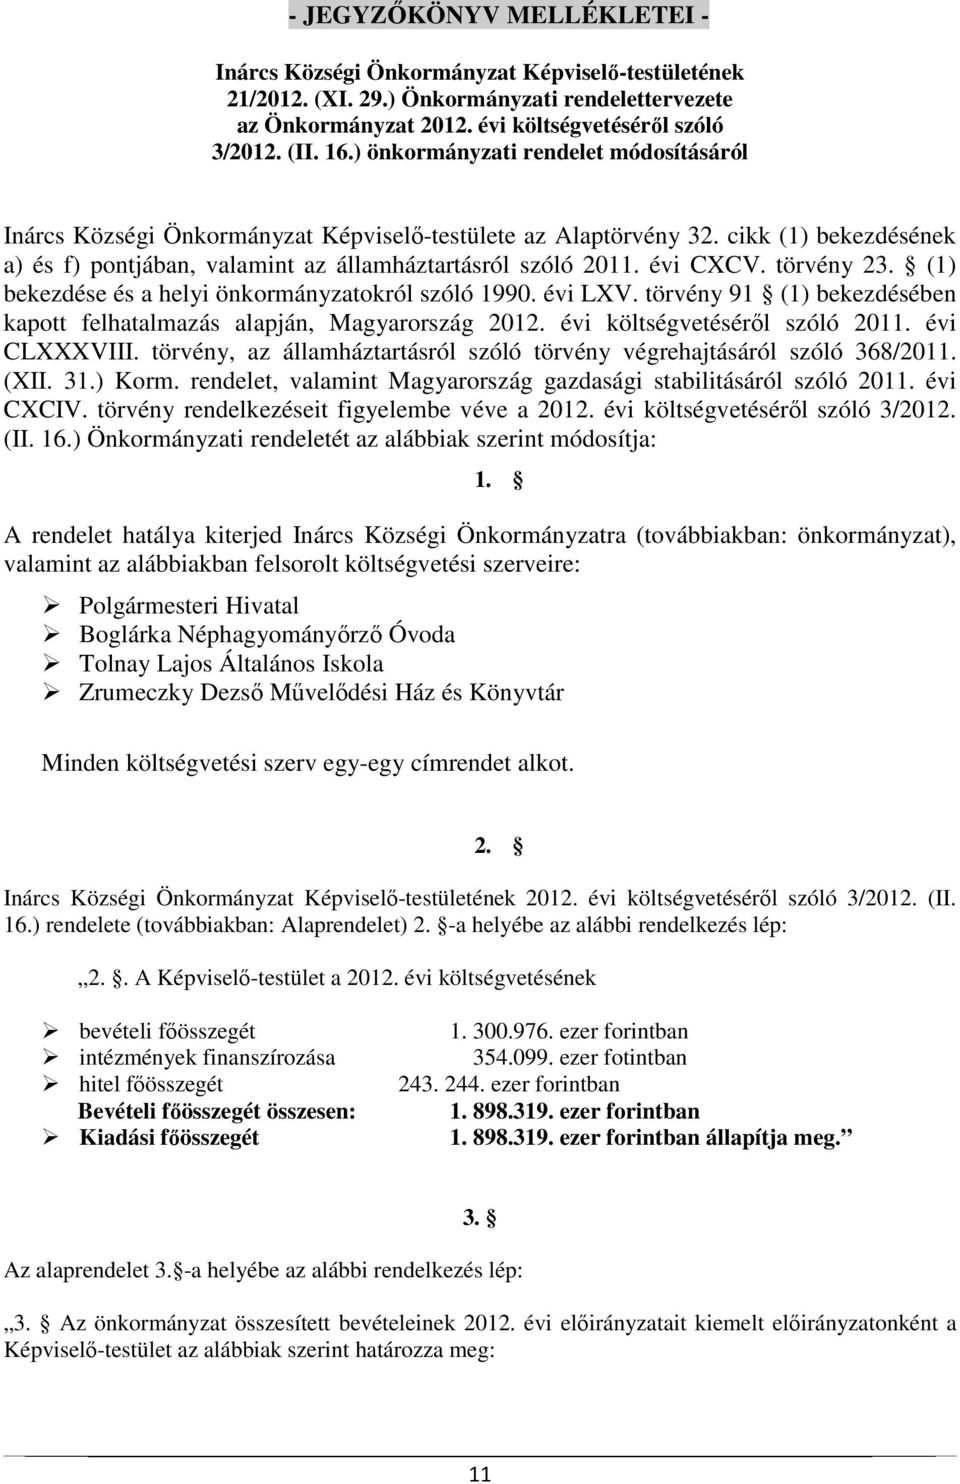 törvény 23. (1) bekezdése és a helyi önkormányzatokról szóló 1990. évi LXV. törvény 91 (1) bekezdésében kapott felhatalmazás alapján, Magyarország 2012. évi költségvetéséről szóló 2011. évi CLXXXVIII.